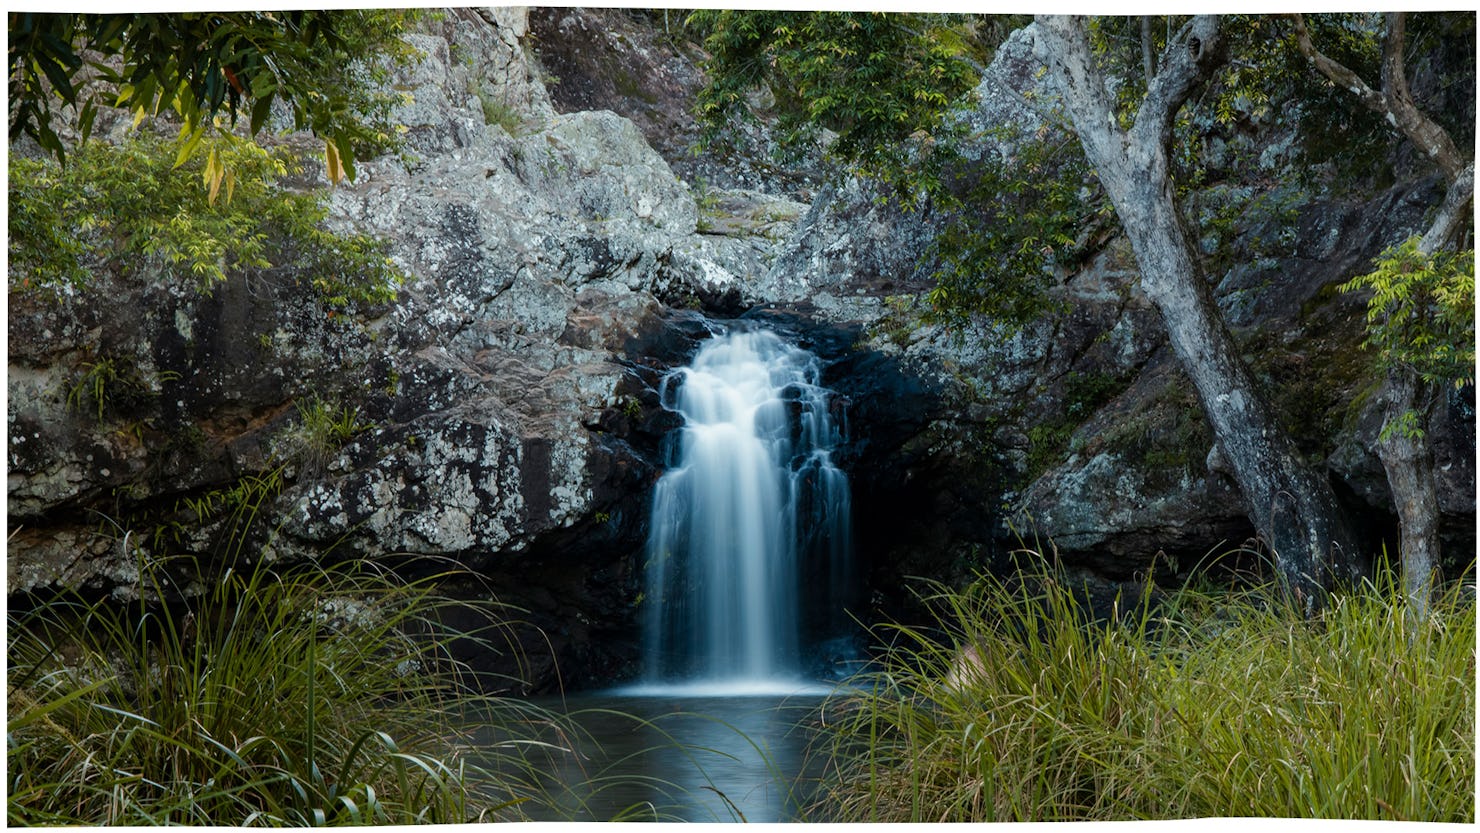 Kondalilla Falls in the Kondalilla National Park, Montville